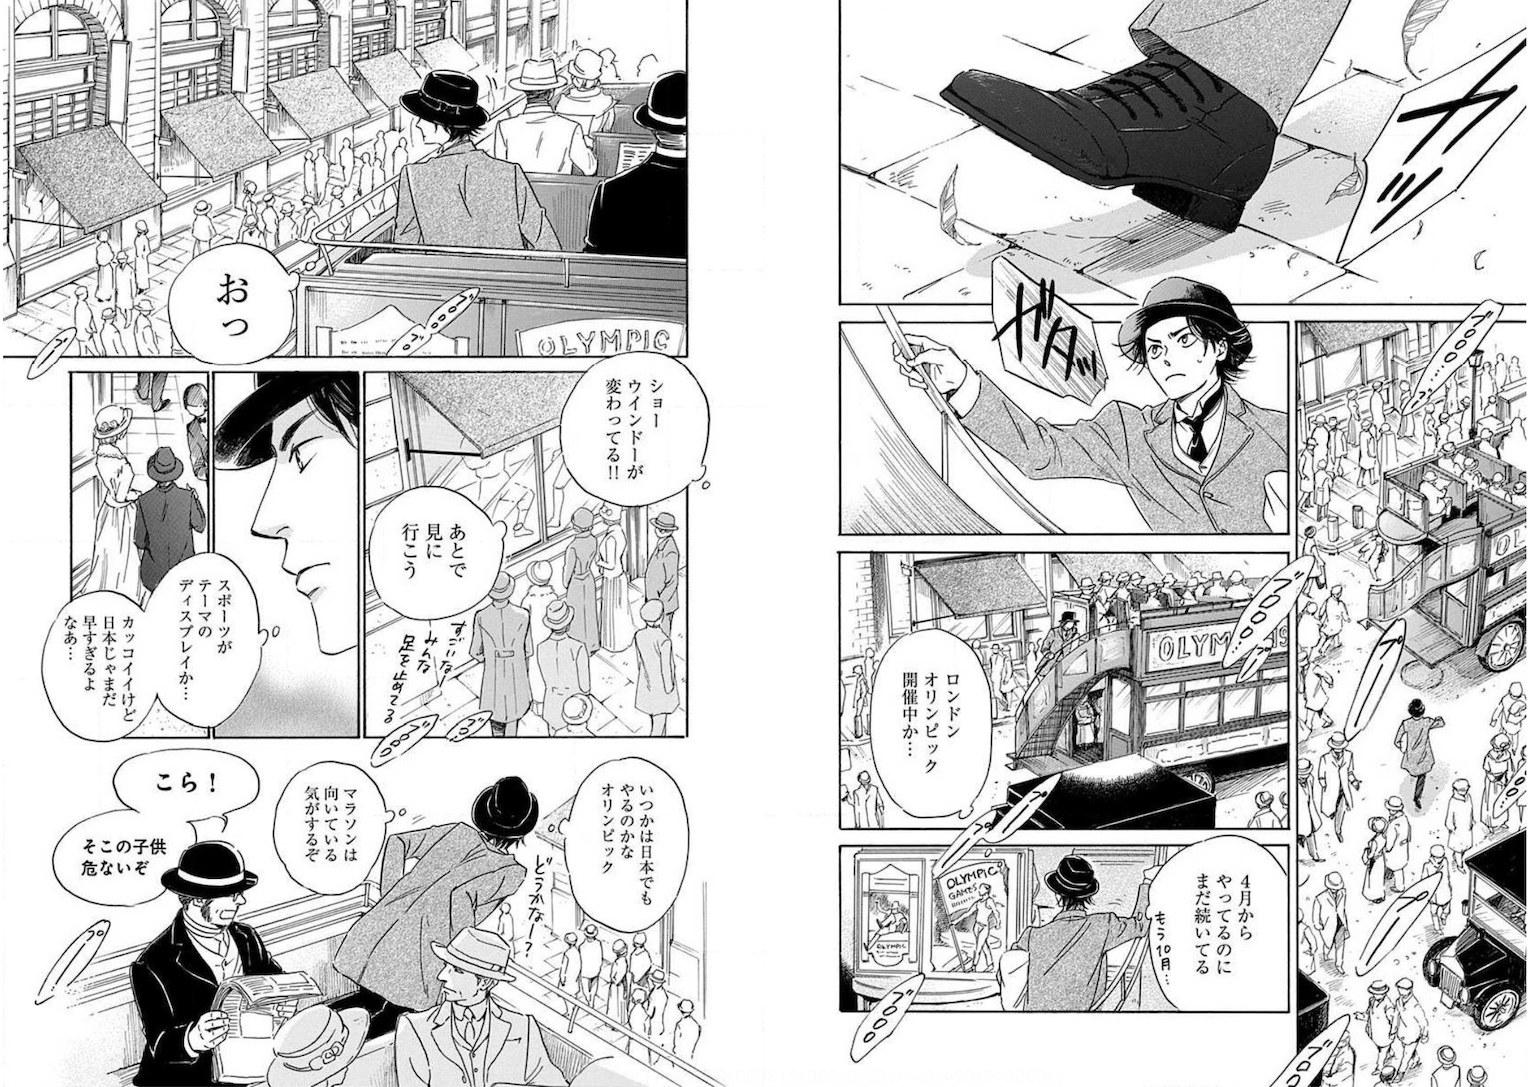 漫画『日に流れて橋に行く』が描く、矜持と覚悟の街・日本橋 